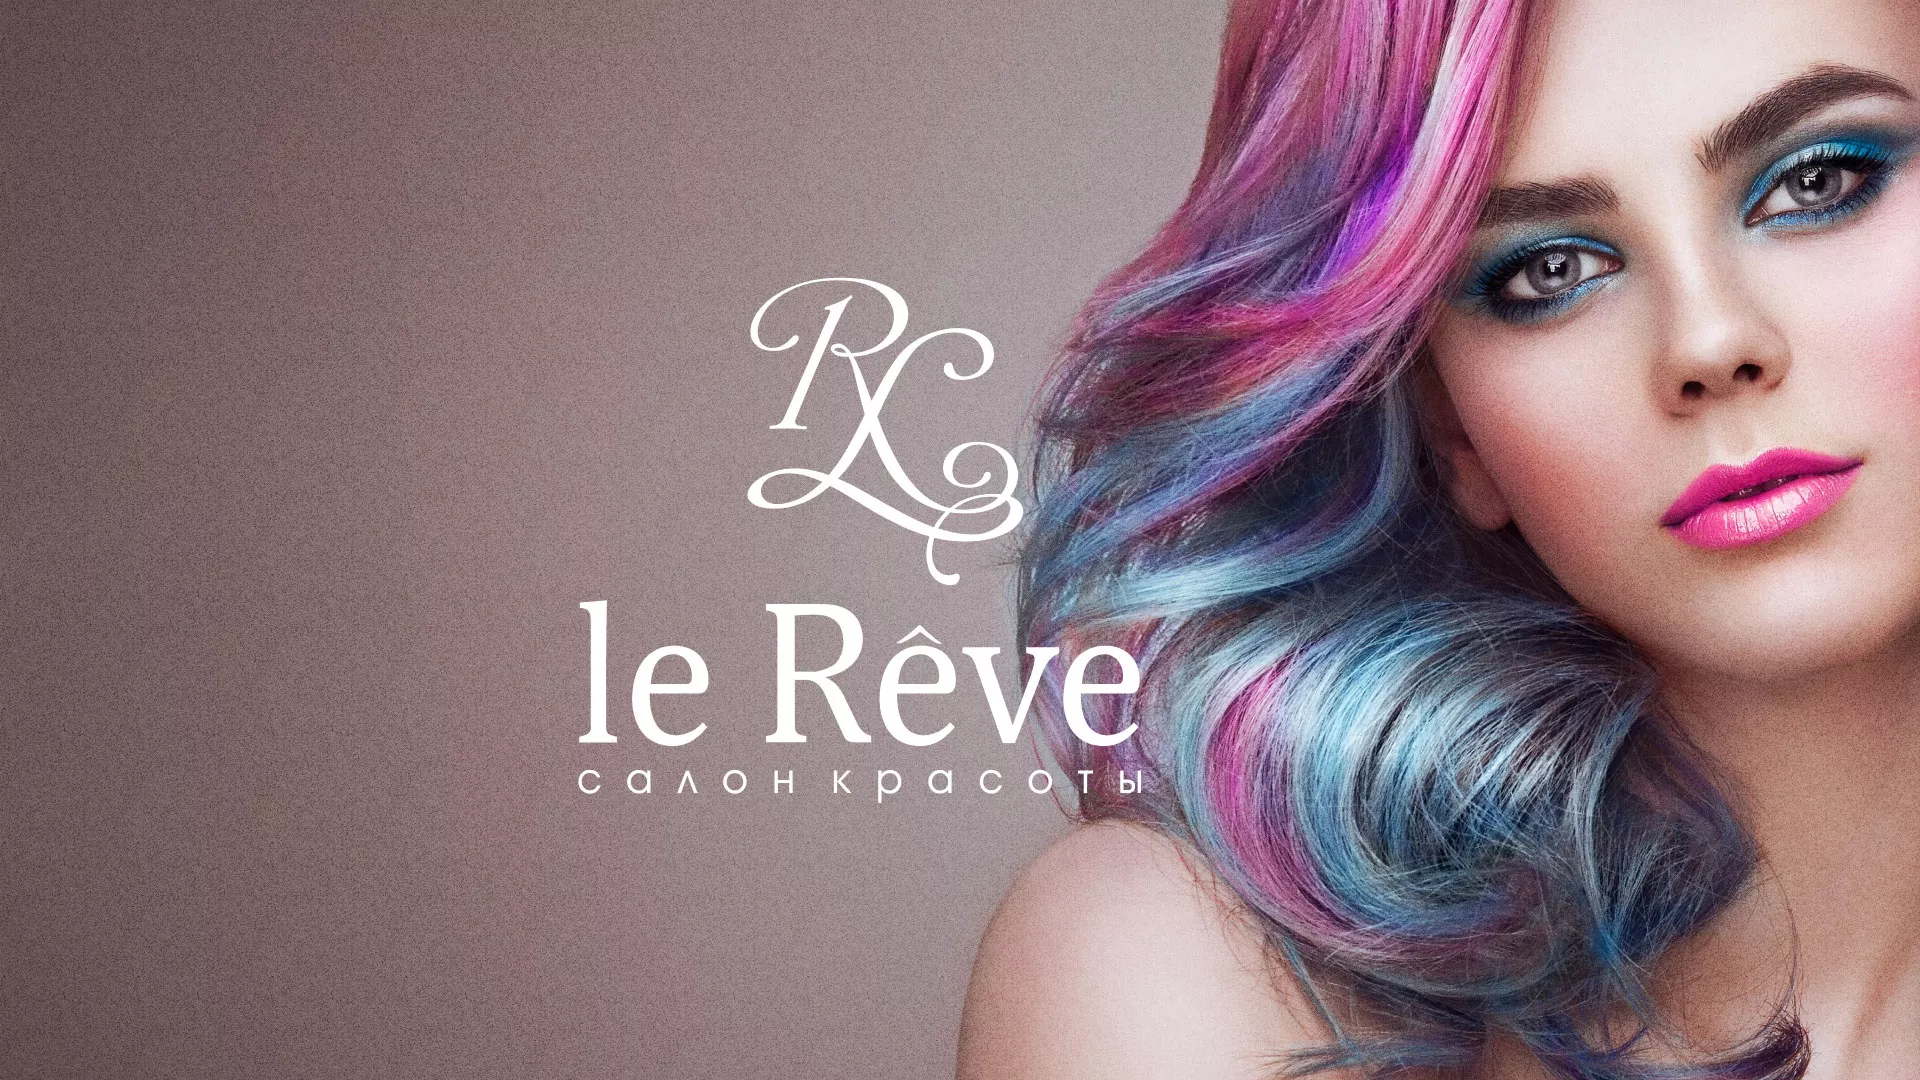 Создание сайта для салона красоты «Le Reve» в Котласе